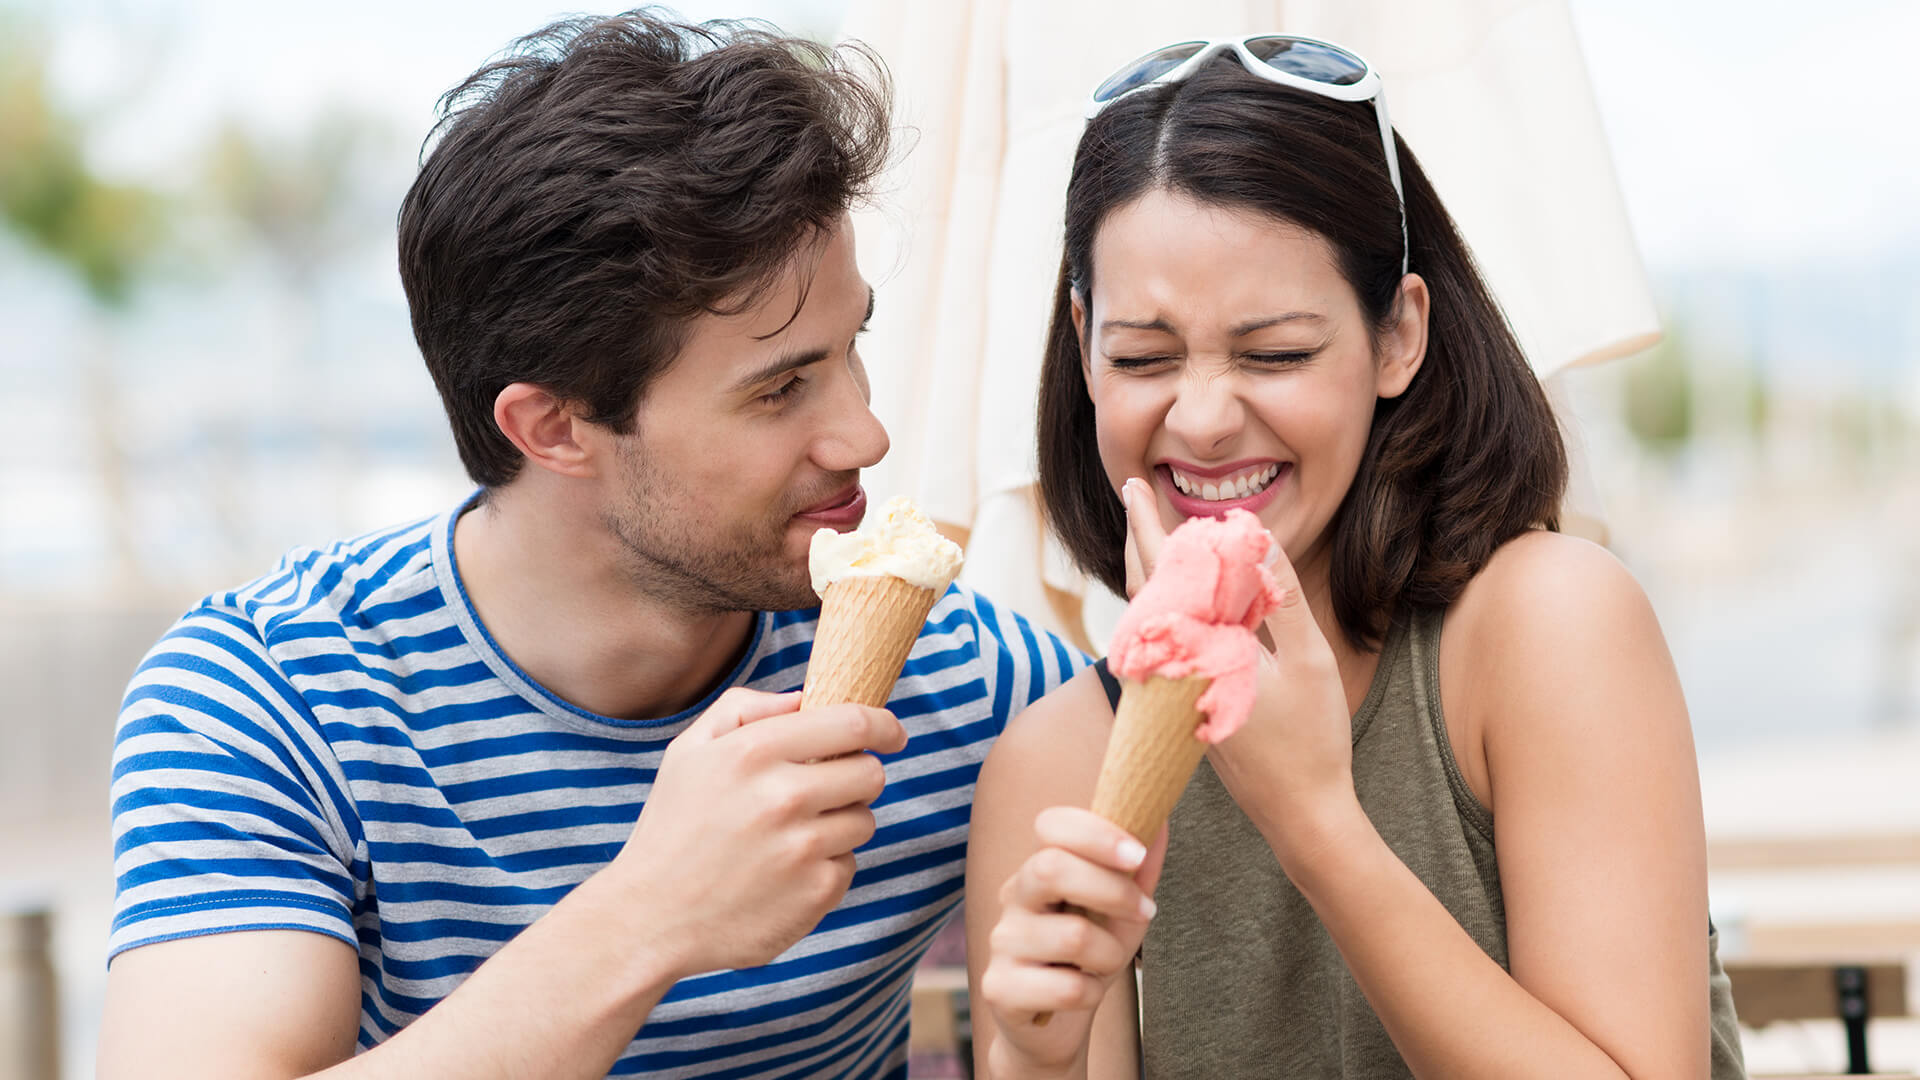 Также есть взрослый. Мороженое для женщин. Девушка и мороженое. Человек ест мороженое. Парень угощает мороженым.